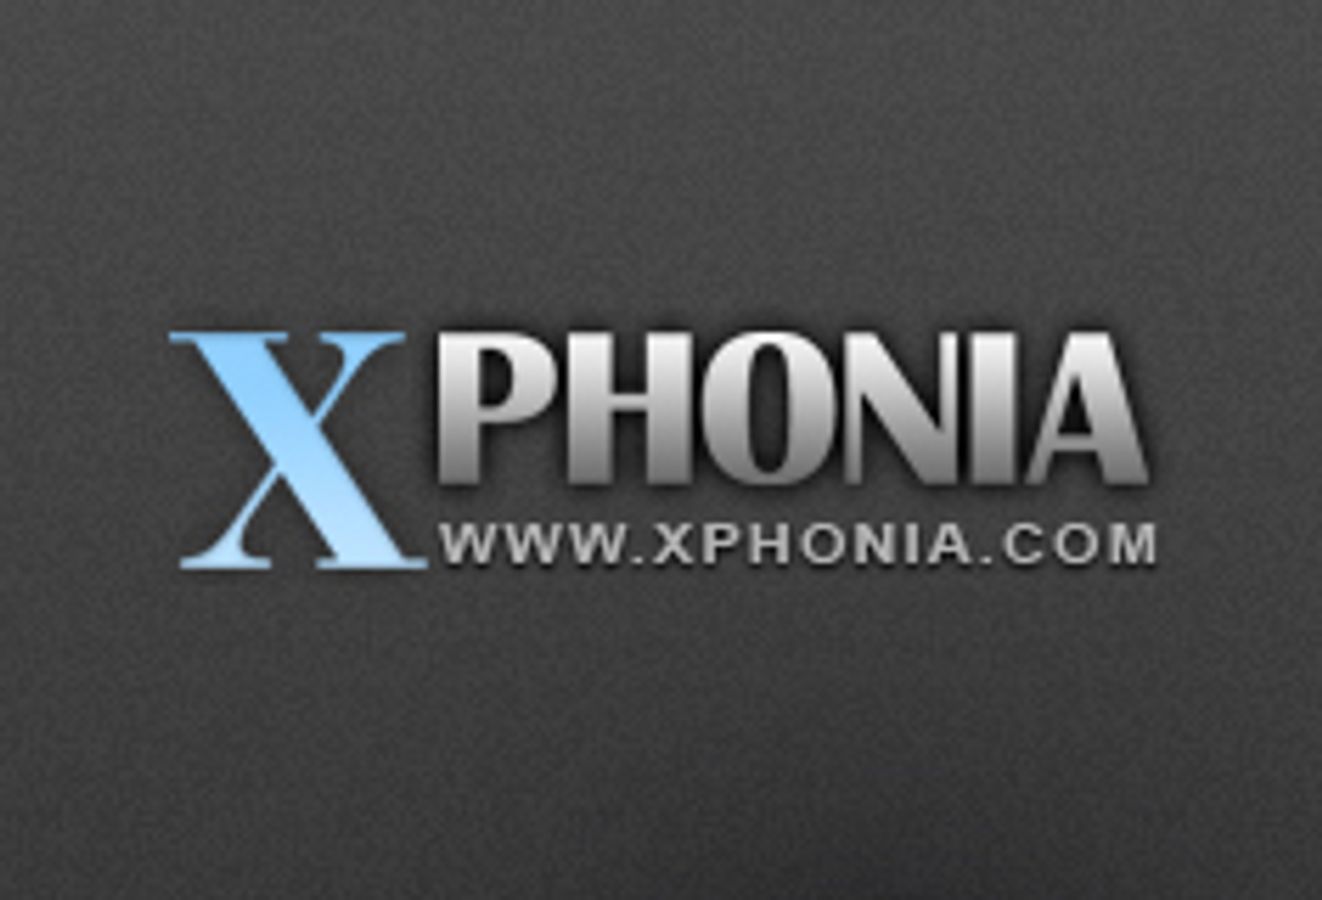 xphonia.com